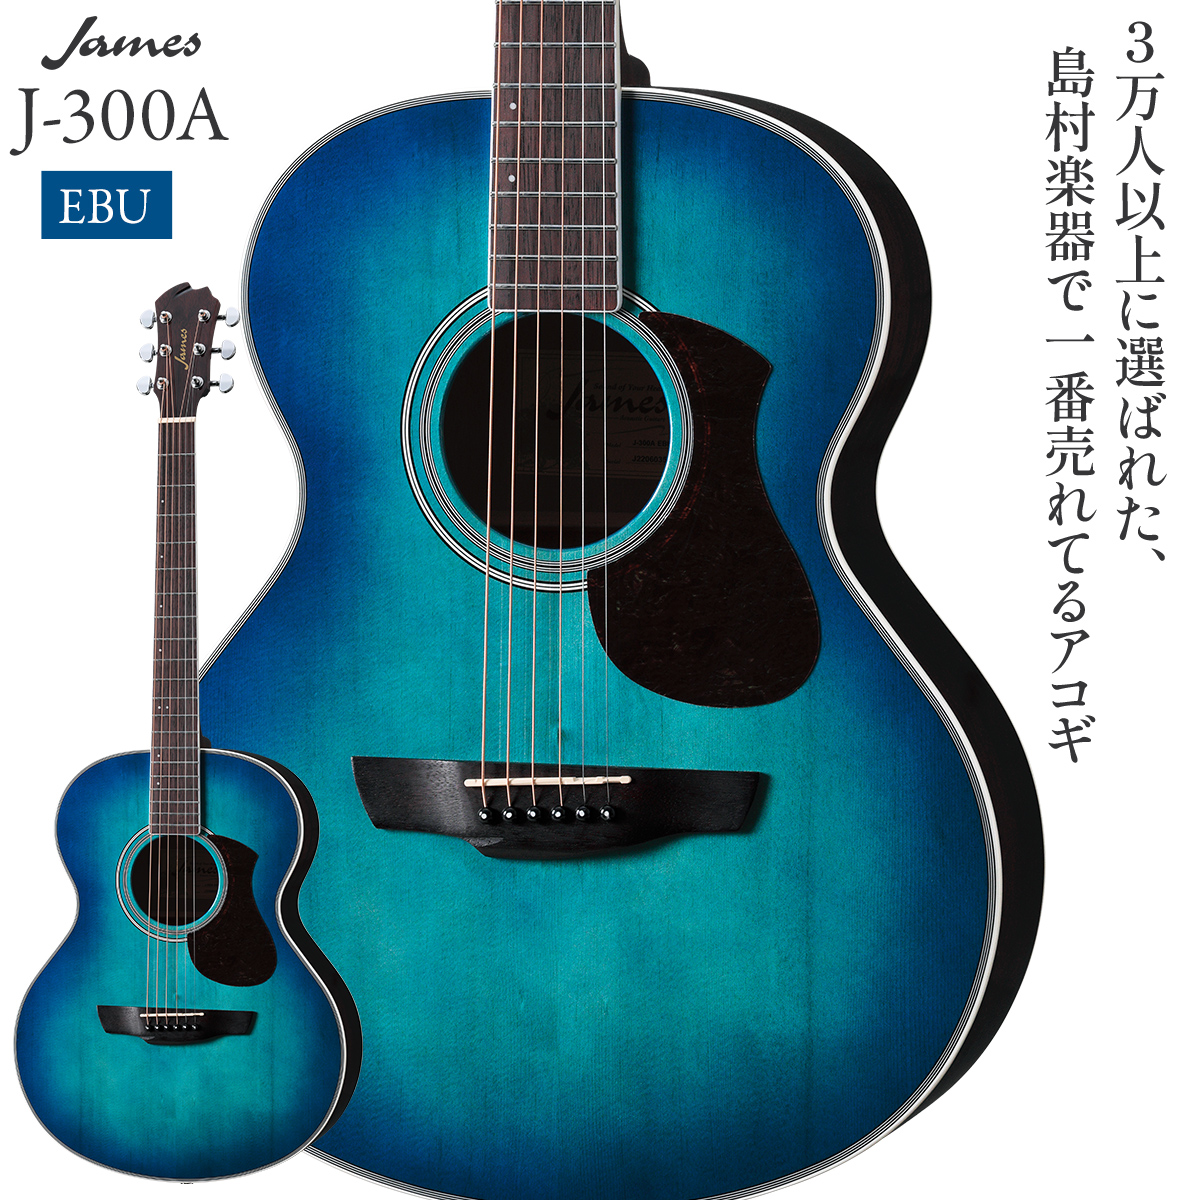 【期間限定!プレゼント付】 James J-300A EBU (アースブルー) アコースティックギター 【ジェームス】